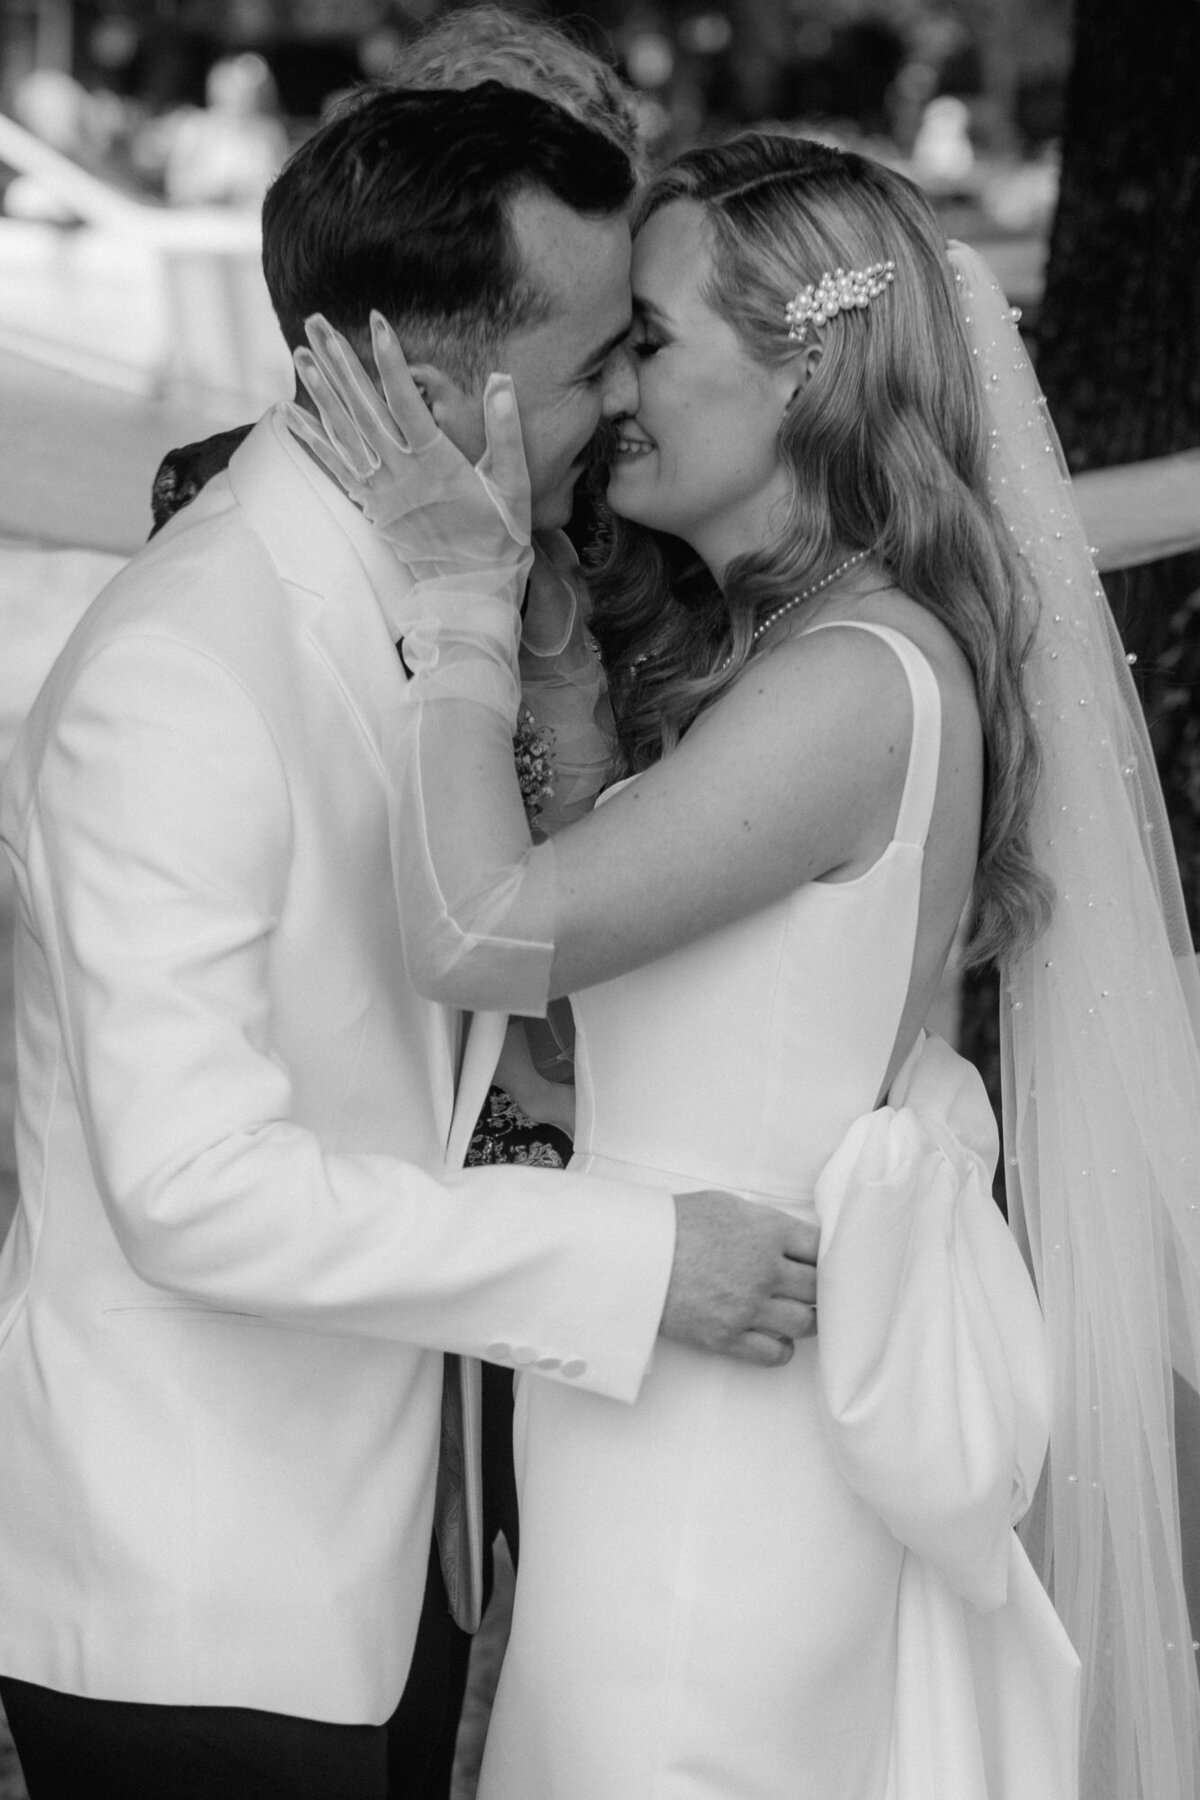 Nach dem Ja-Wort gibt sich das Hochzeitspaar den ersten Kuss als verheiratetes Paar.